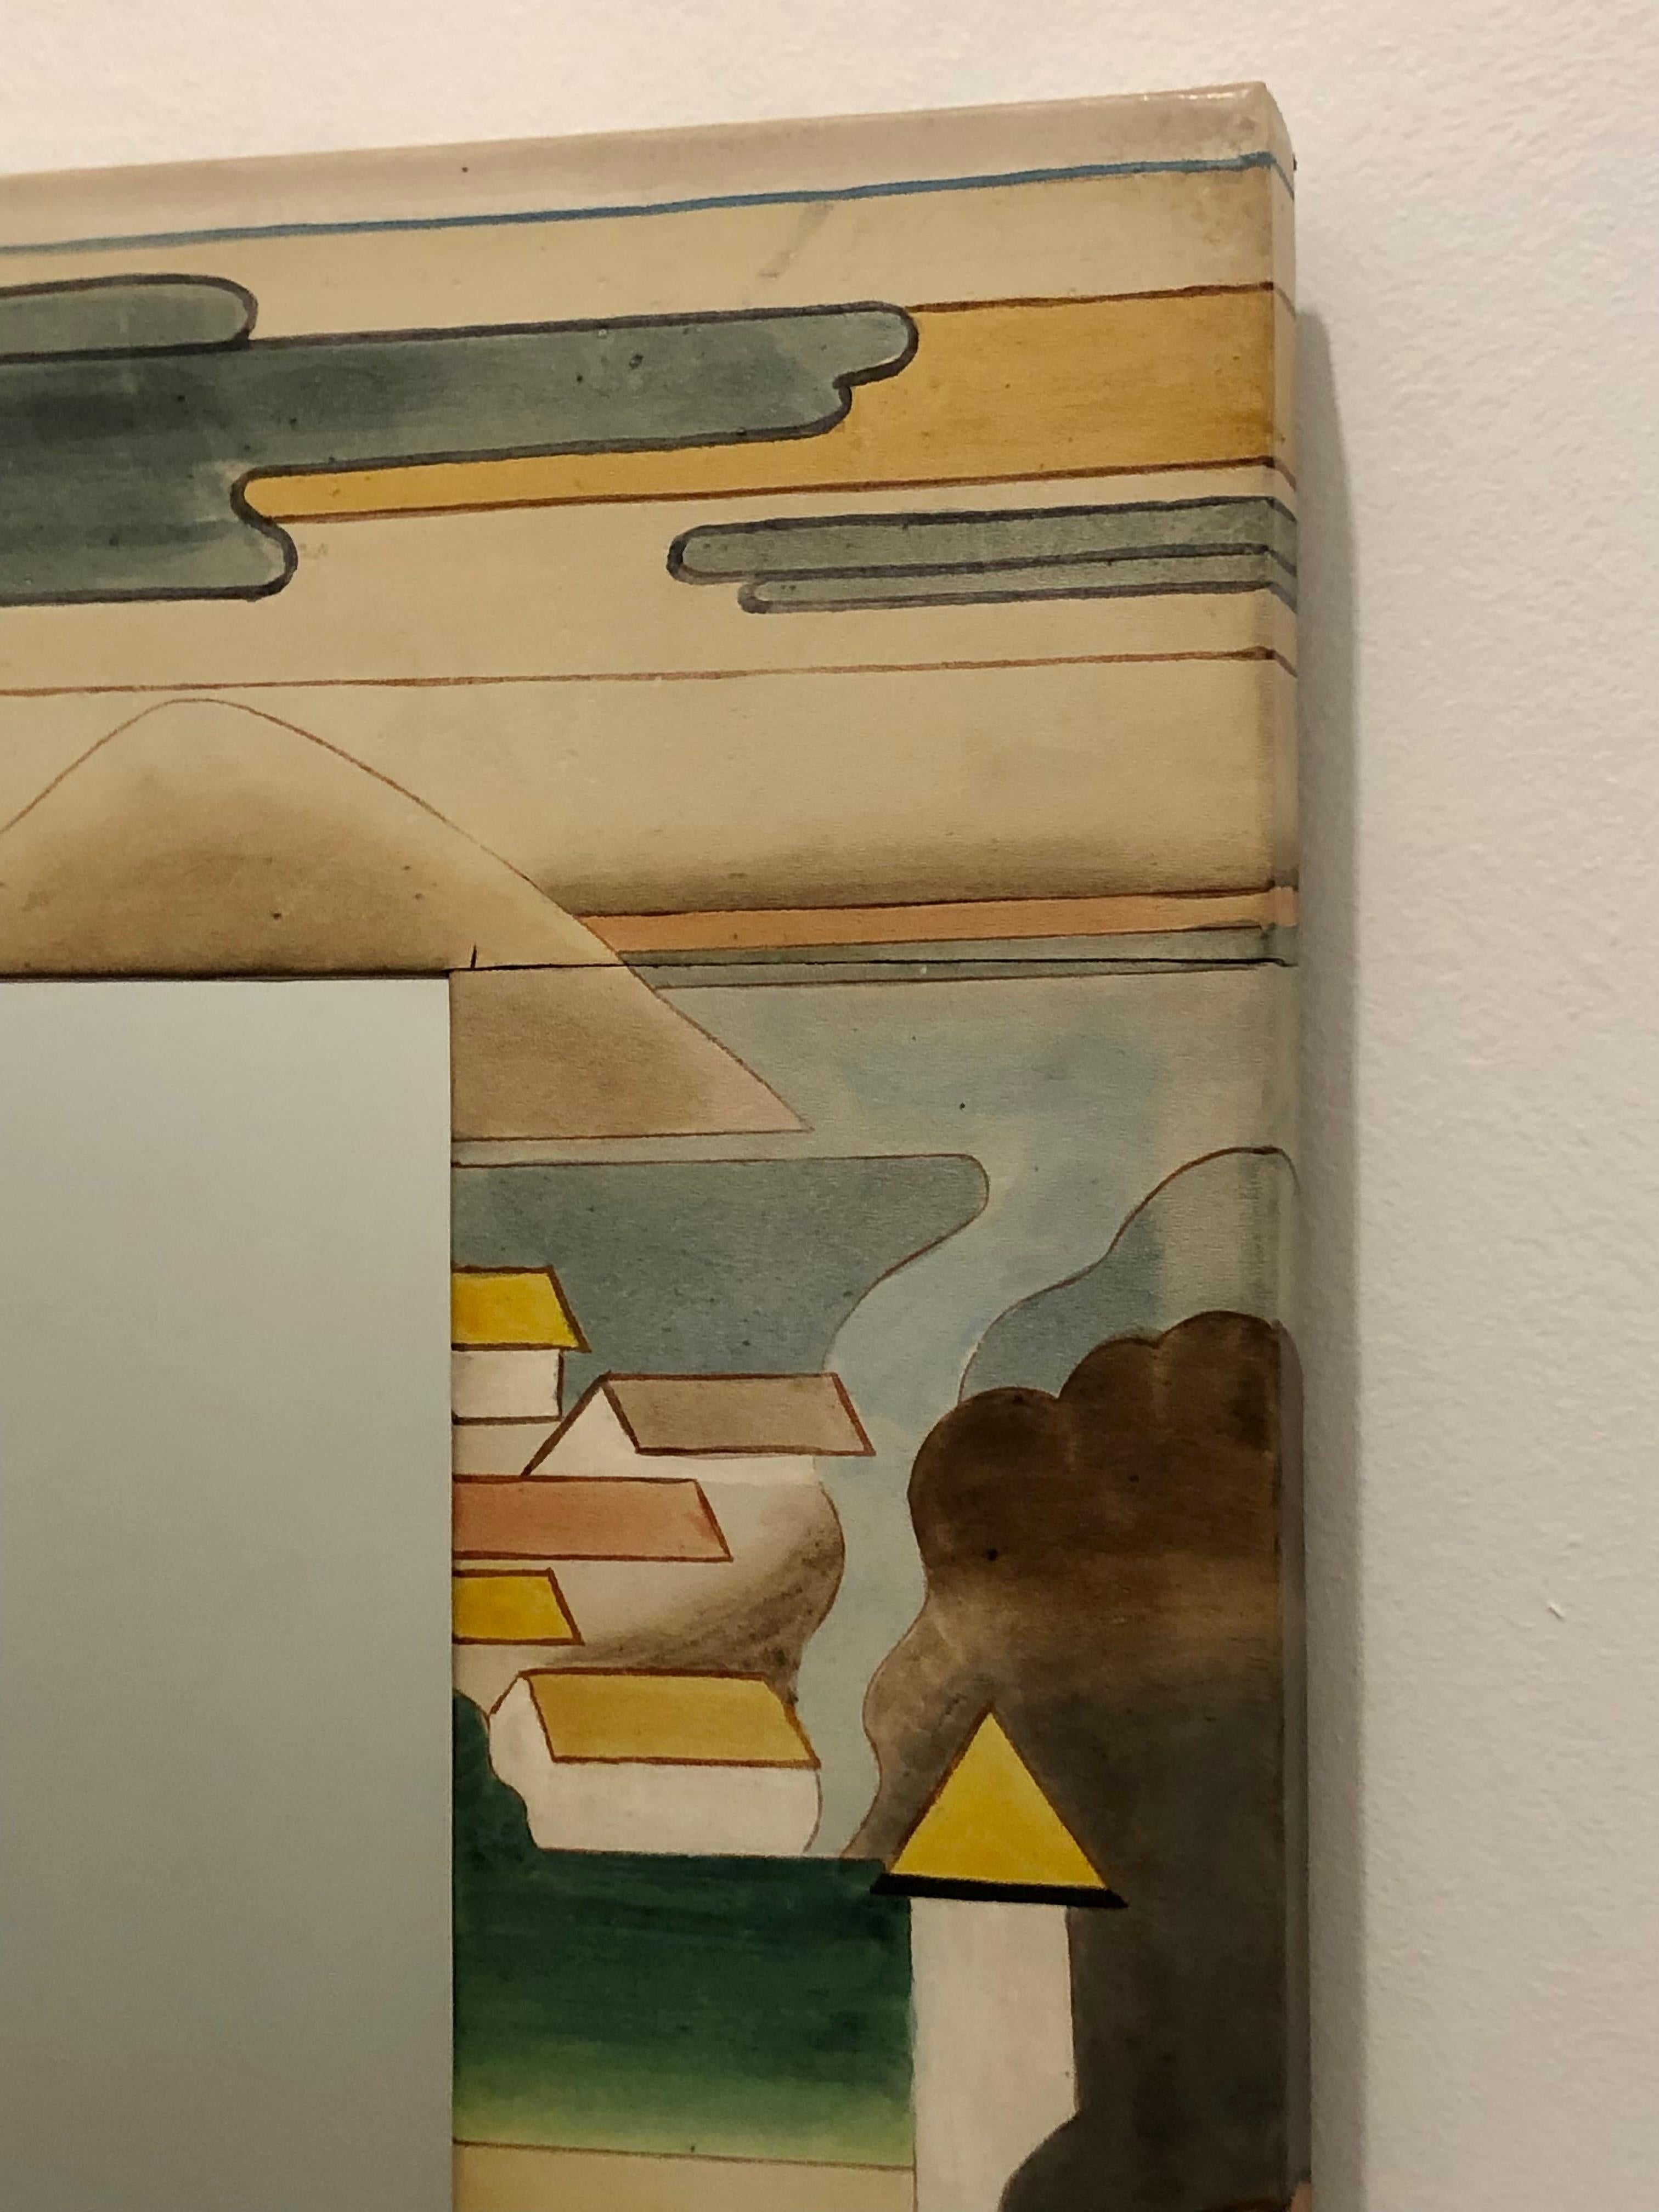 Ungewöhnlicher Wandspiegel des 20. Jahrhunderts, um 1980. Handbemaltes Leder über Holzrahmen. In absolut neuwertigem Zustand, ohne Ausbleichen, Risse oder Kratzer.
Dies ist ein wunderschönes Stück mit stilisierten Bildern von Bäumen und Dorfhäusern.